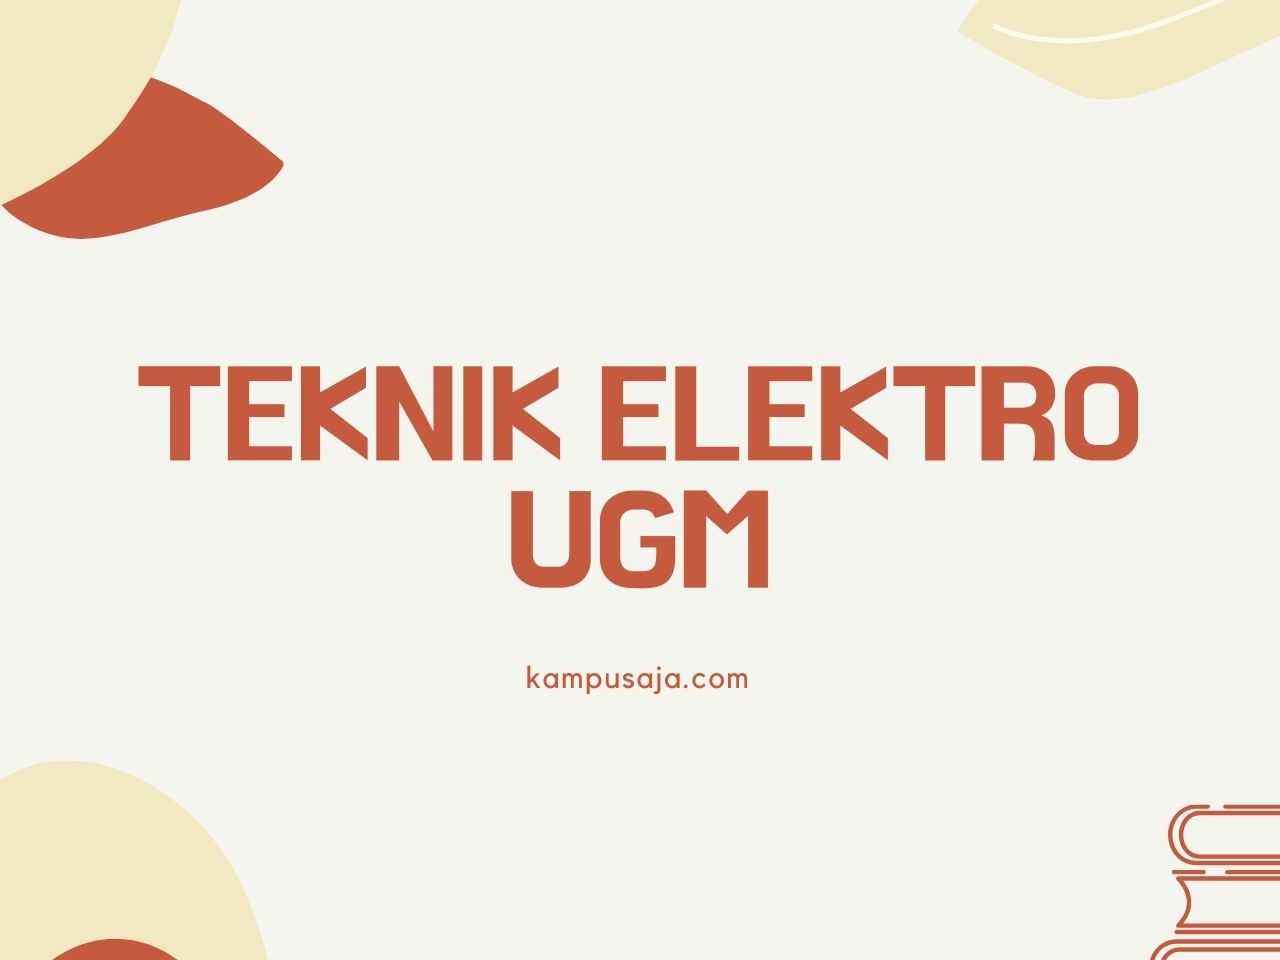 Teknik Elektro UGM